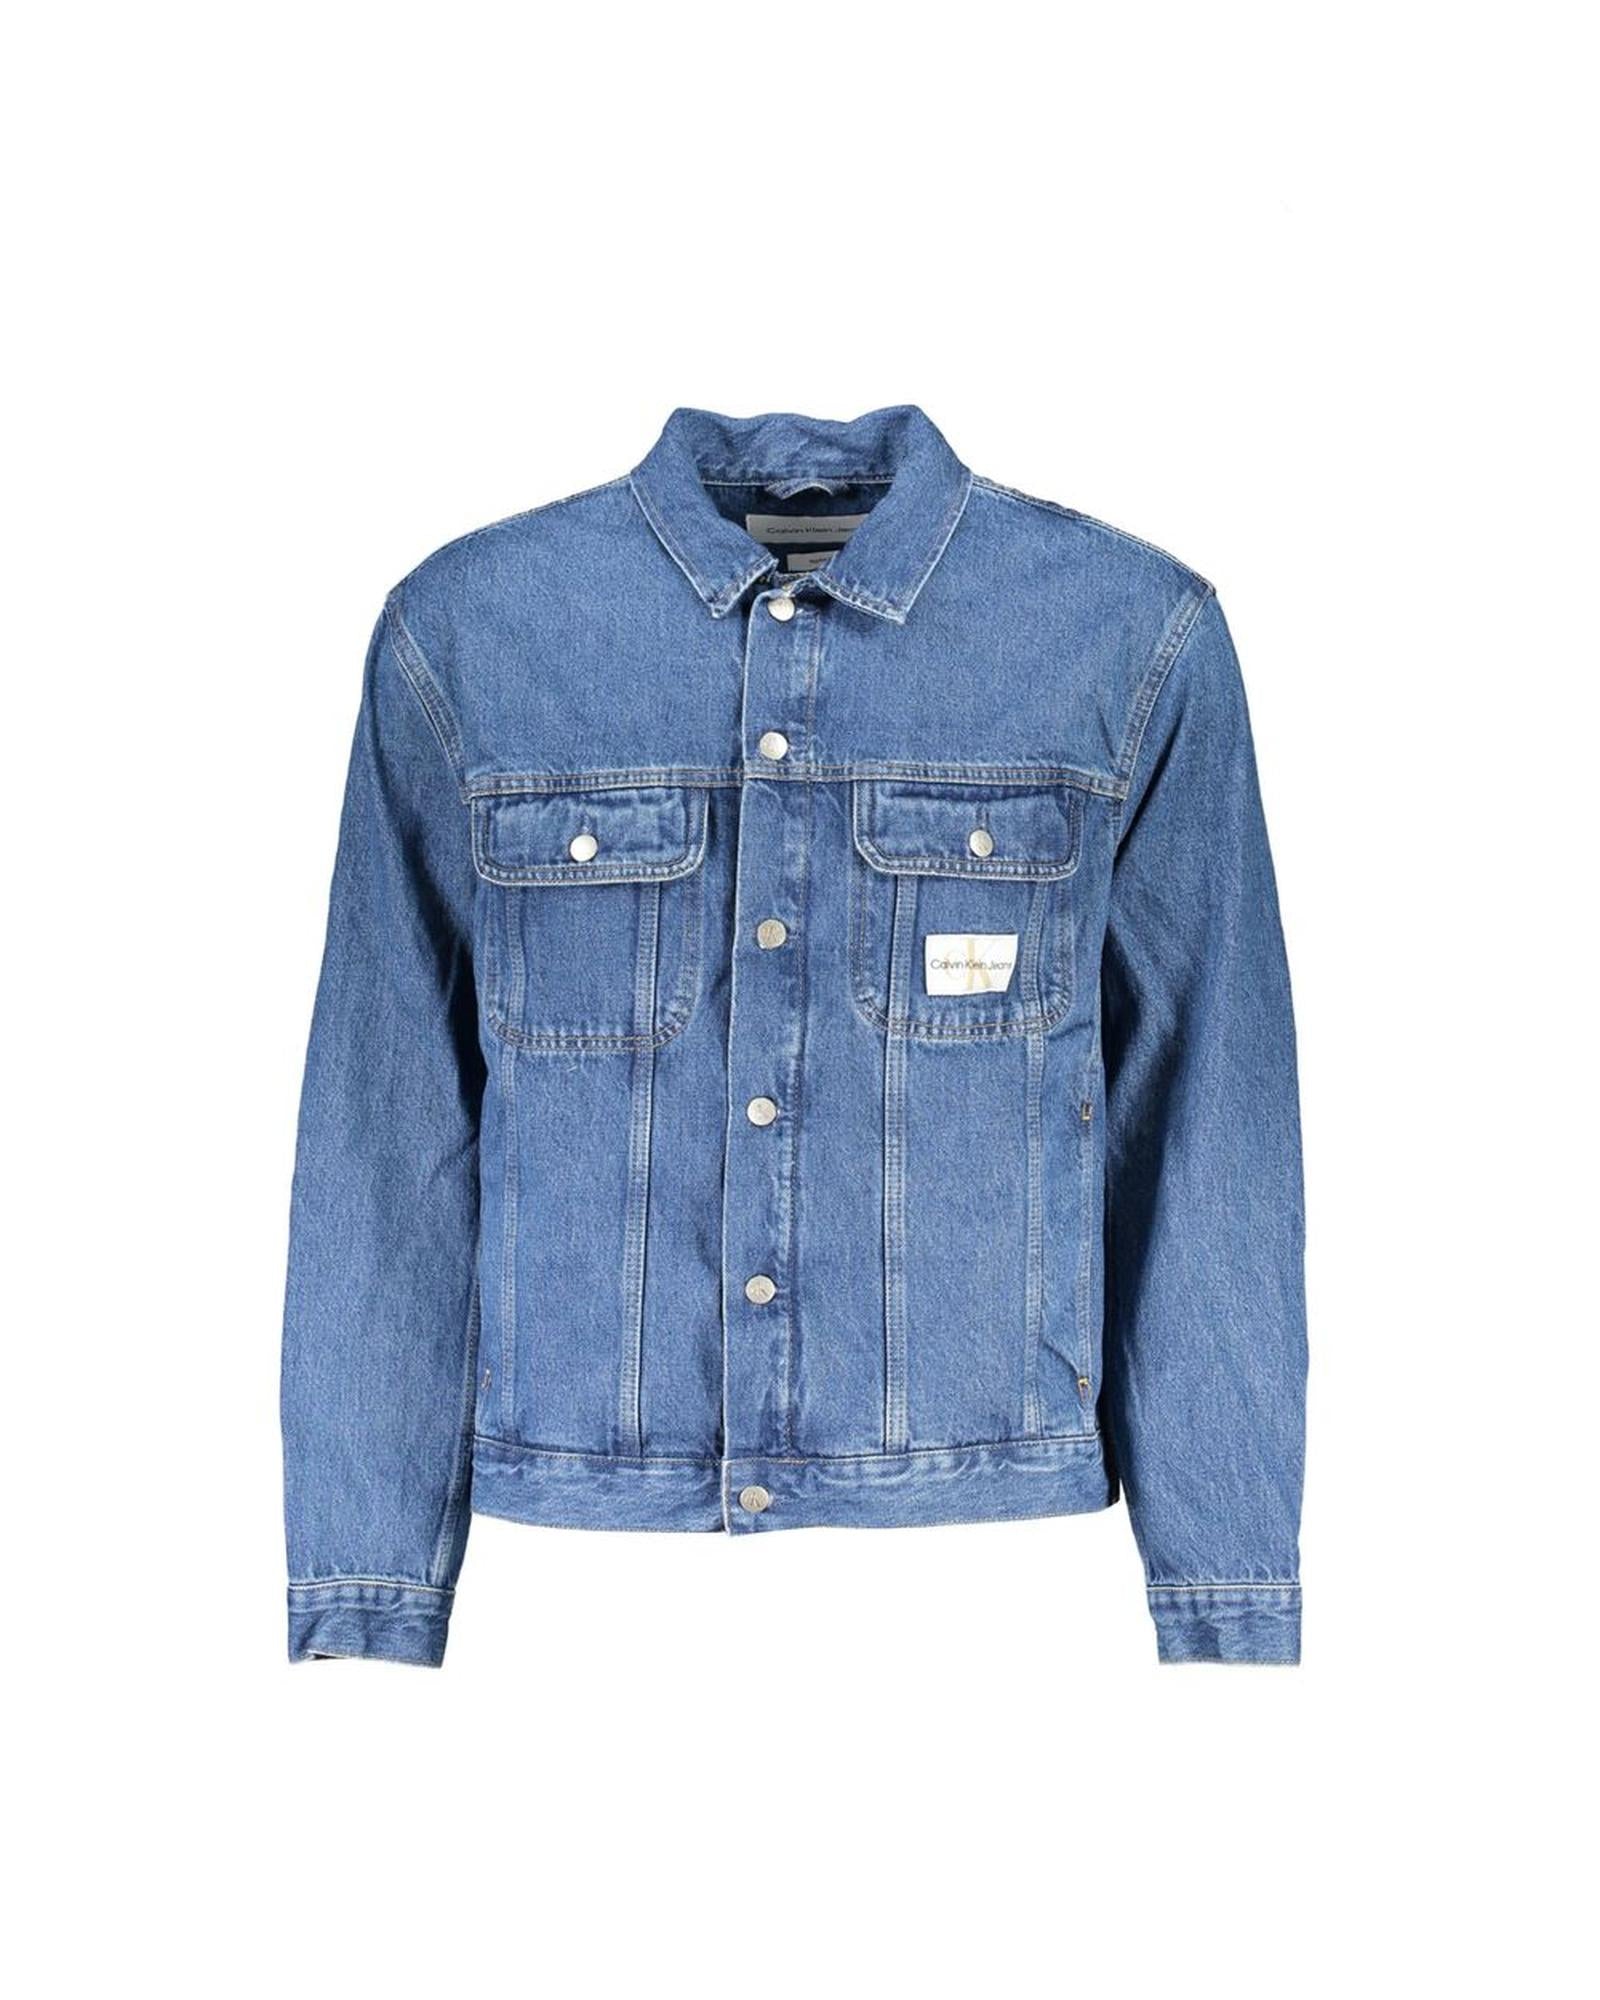 Men's Blue Cotton Jacket - 2XL